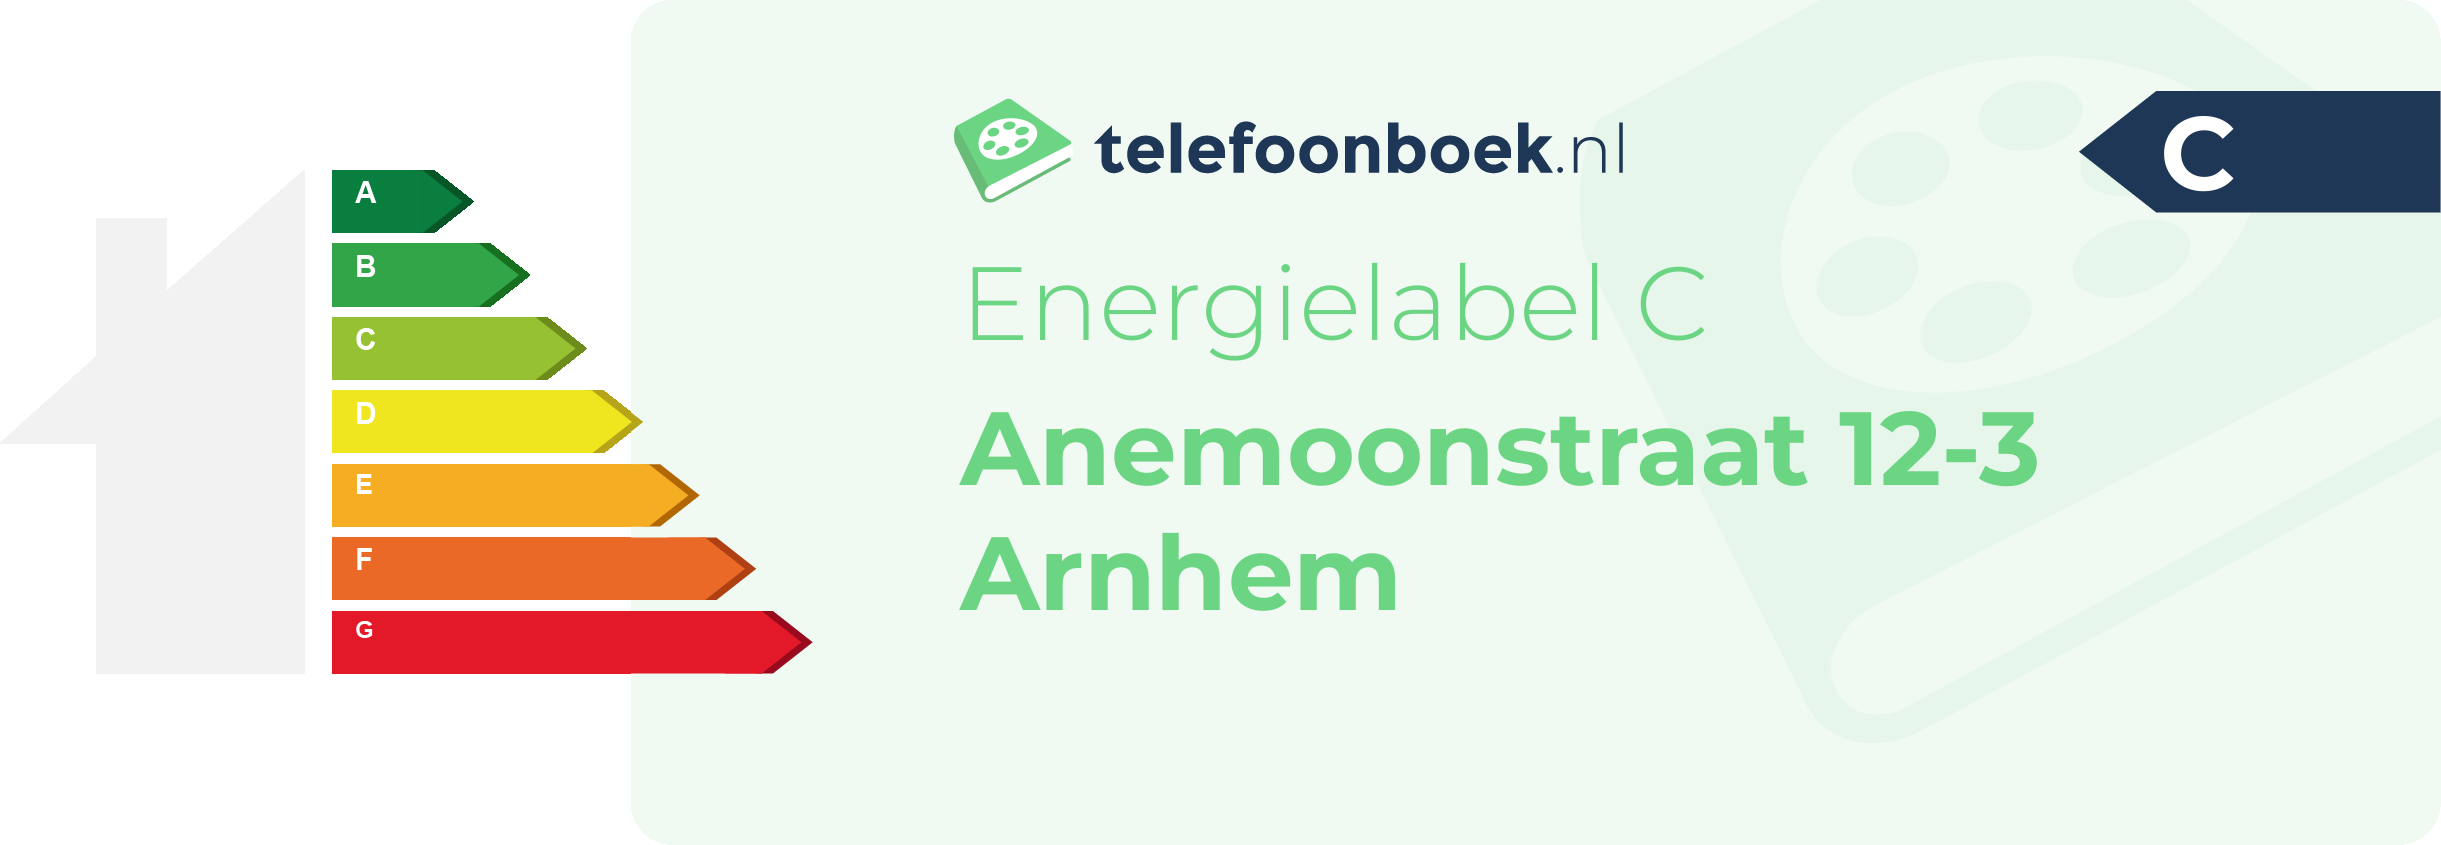 Energielabel Anemoonstraat 12-3 Arnhem